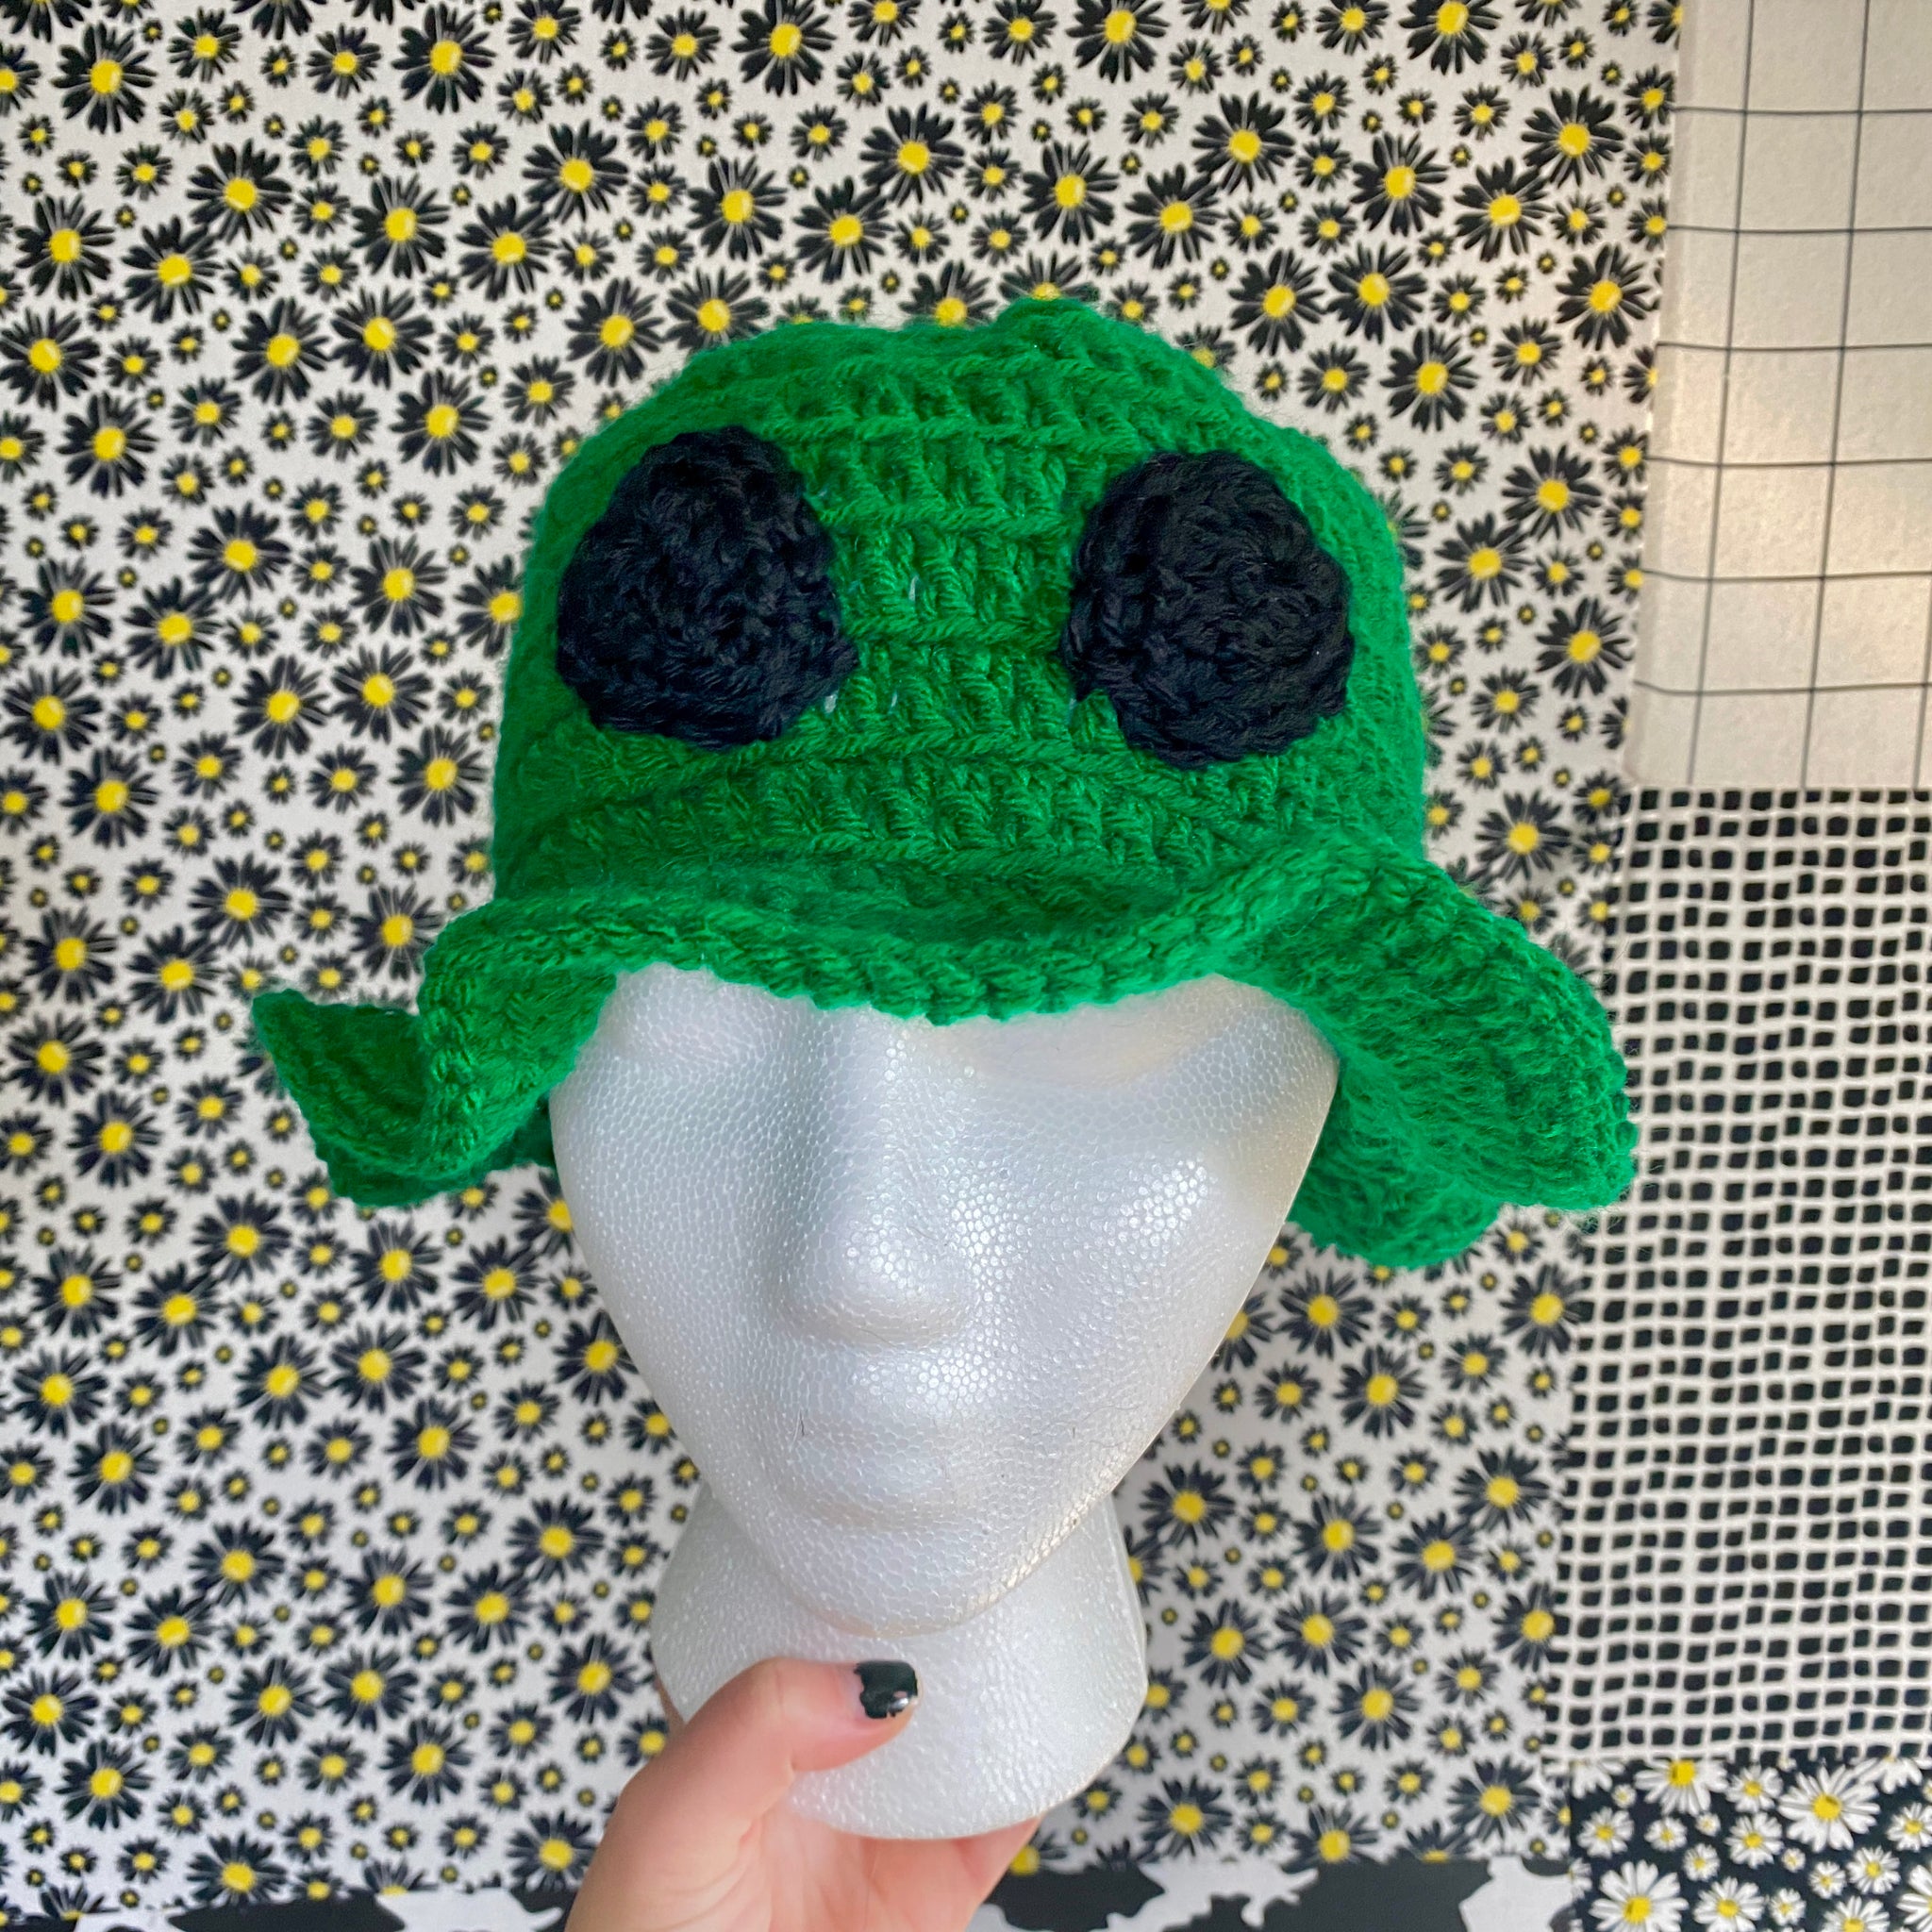 Alien Crochet Bucket Hat | Assorted Colors | Handmade by Juliet